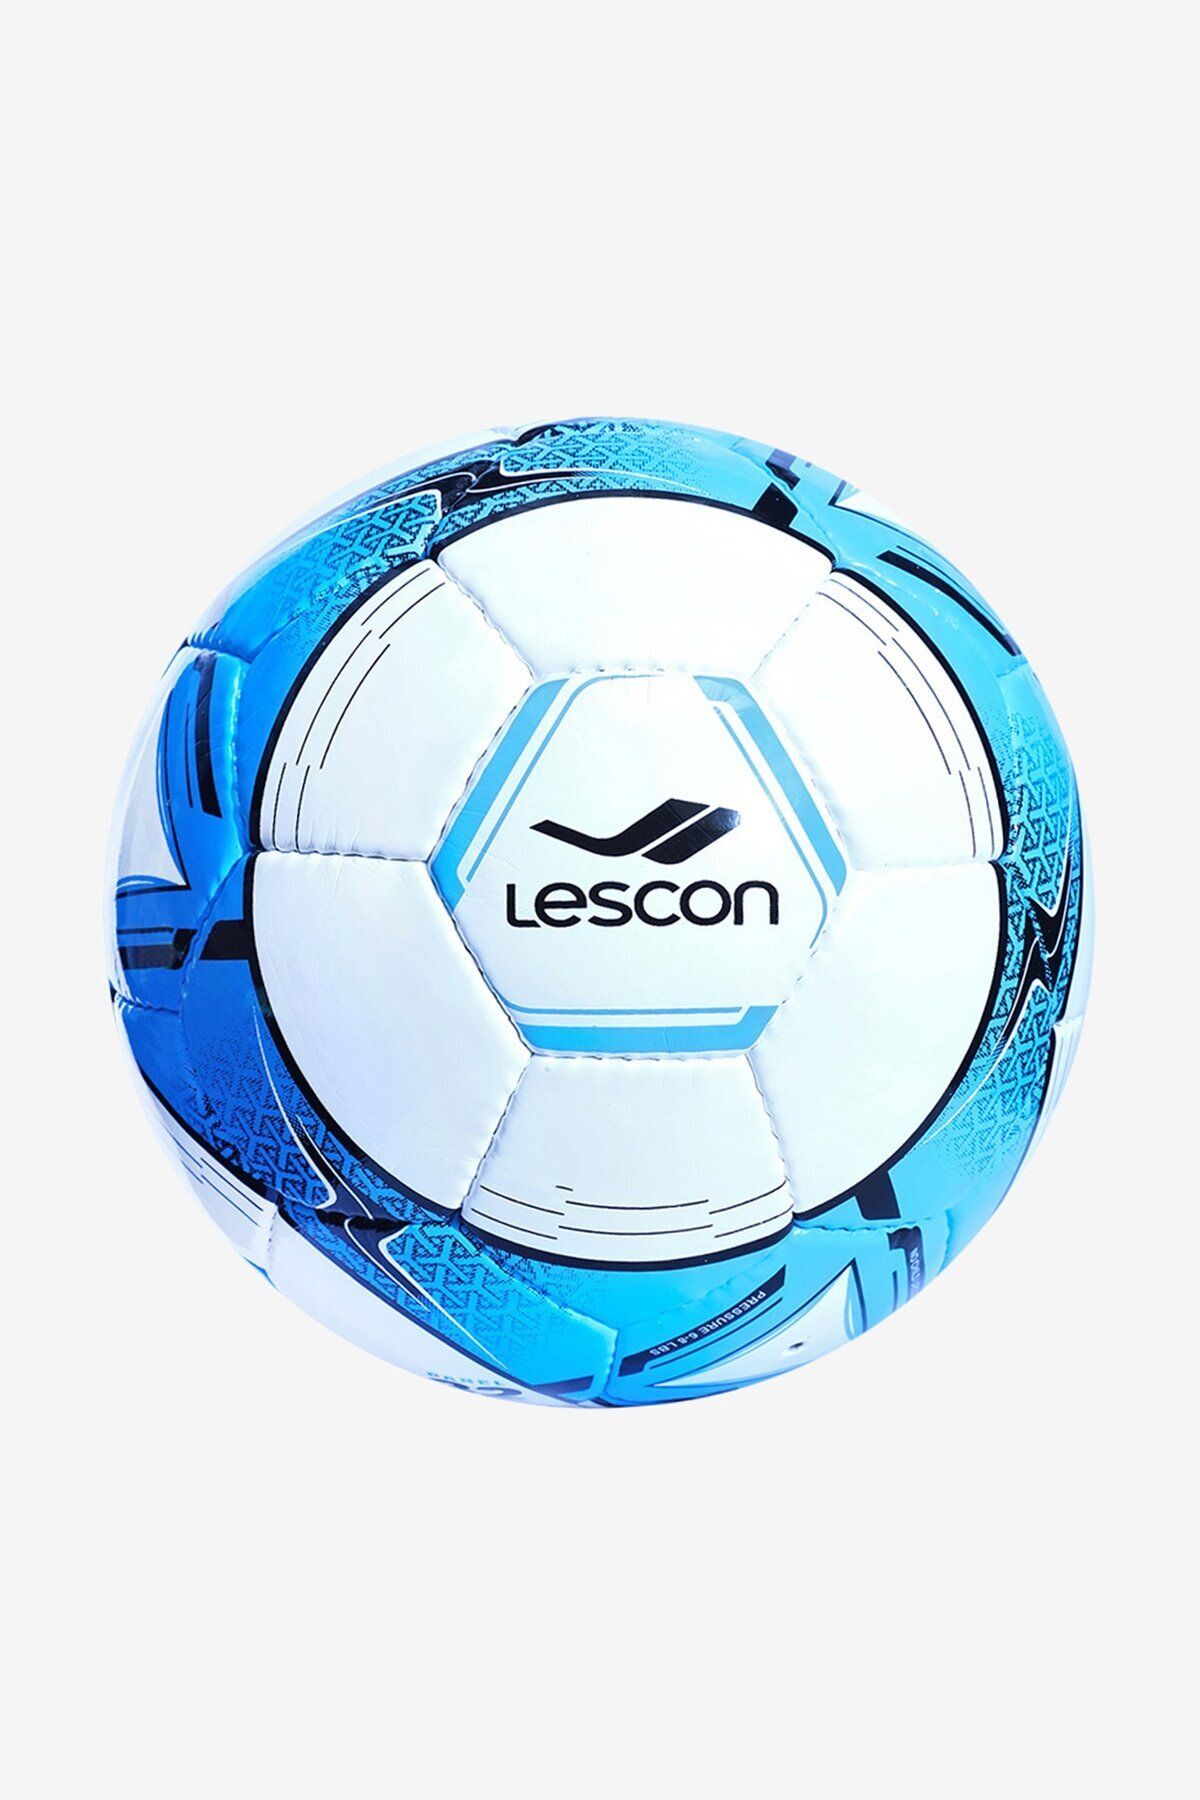 Lescon La-3532 Futbol Topu 5 Numara